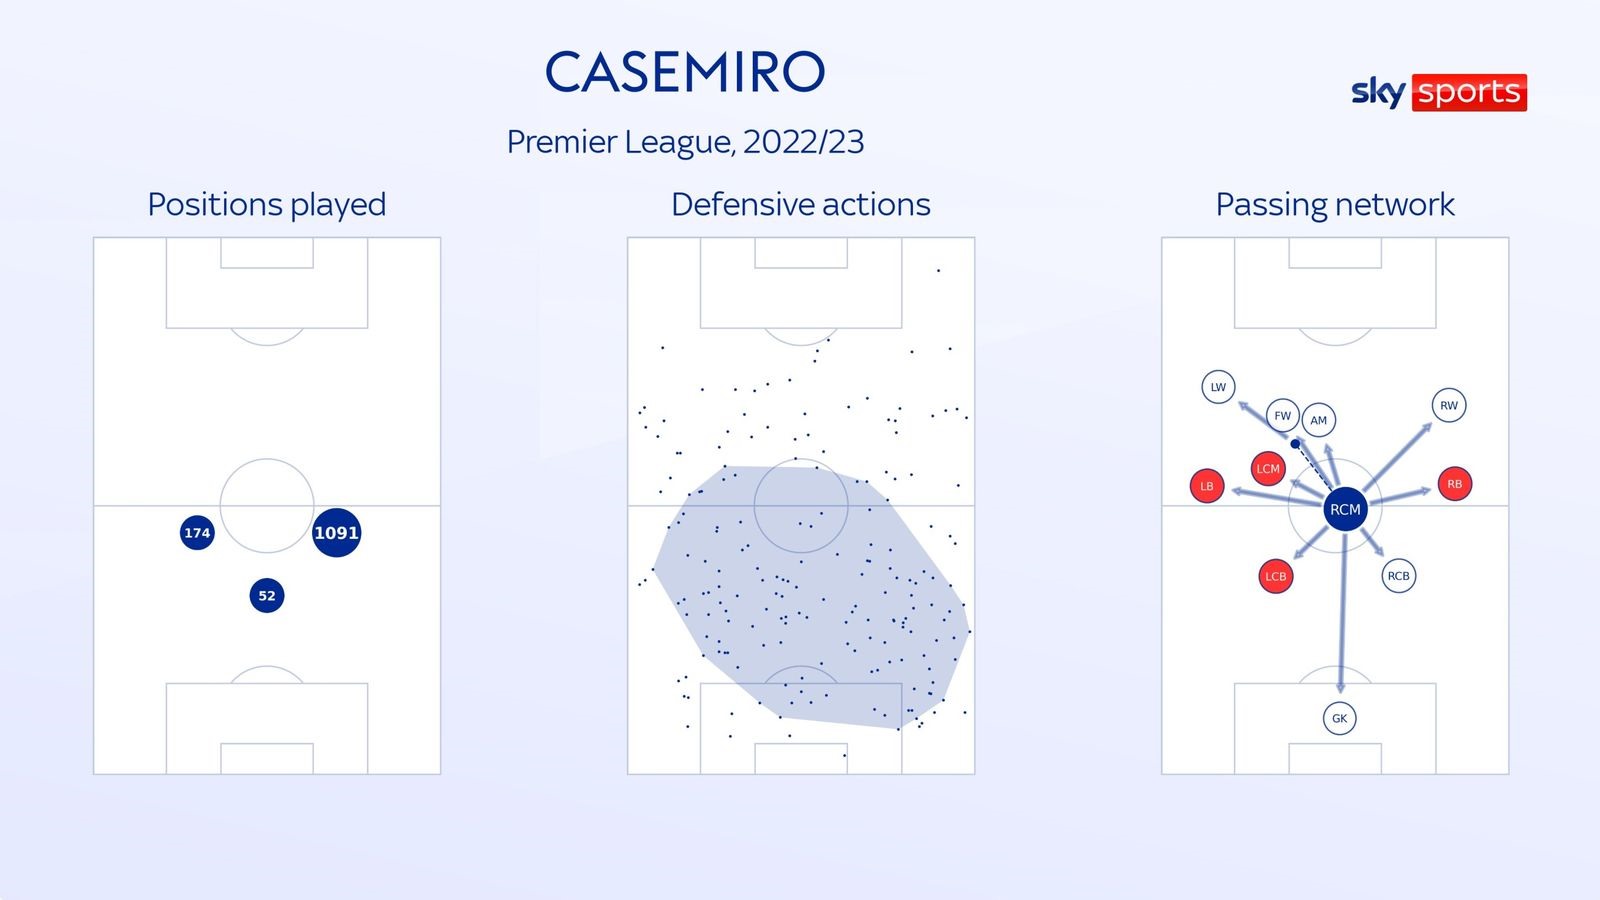 Vị trí chơi, khu vực phòng ngự và hướng điều phối bóng quen thuộc của Casemiro. Ảnh thiết kế: Sky Sports